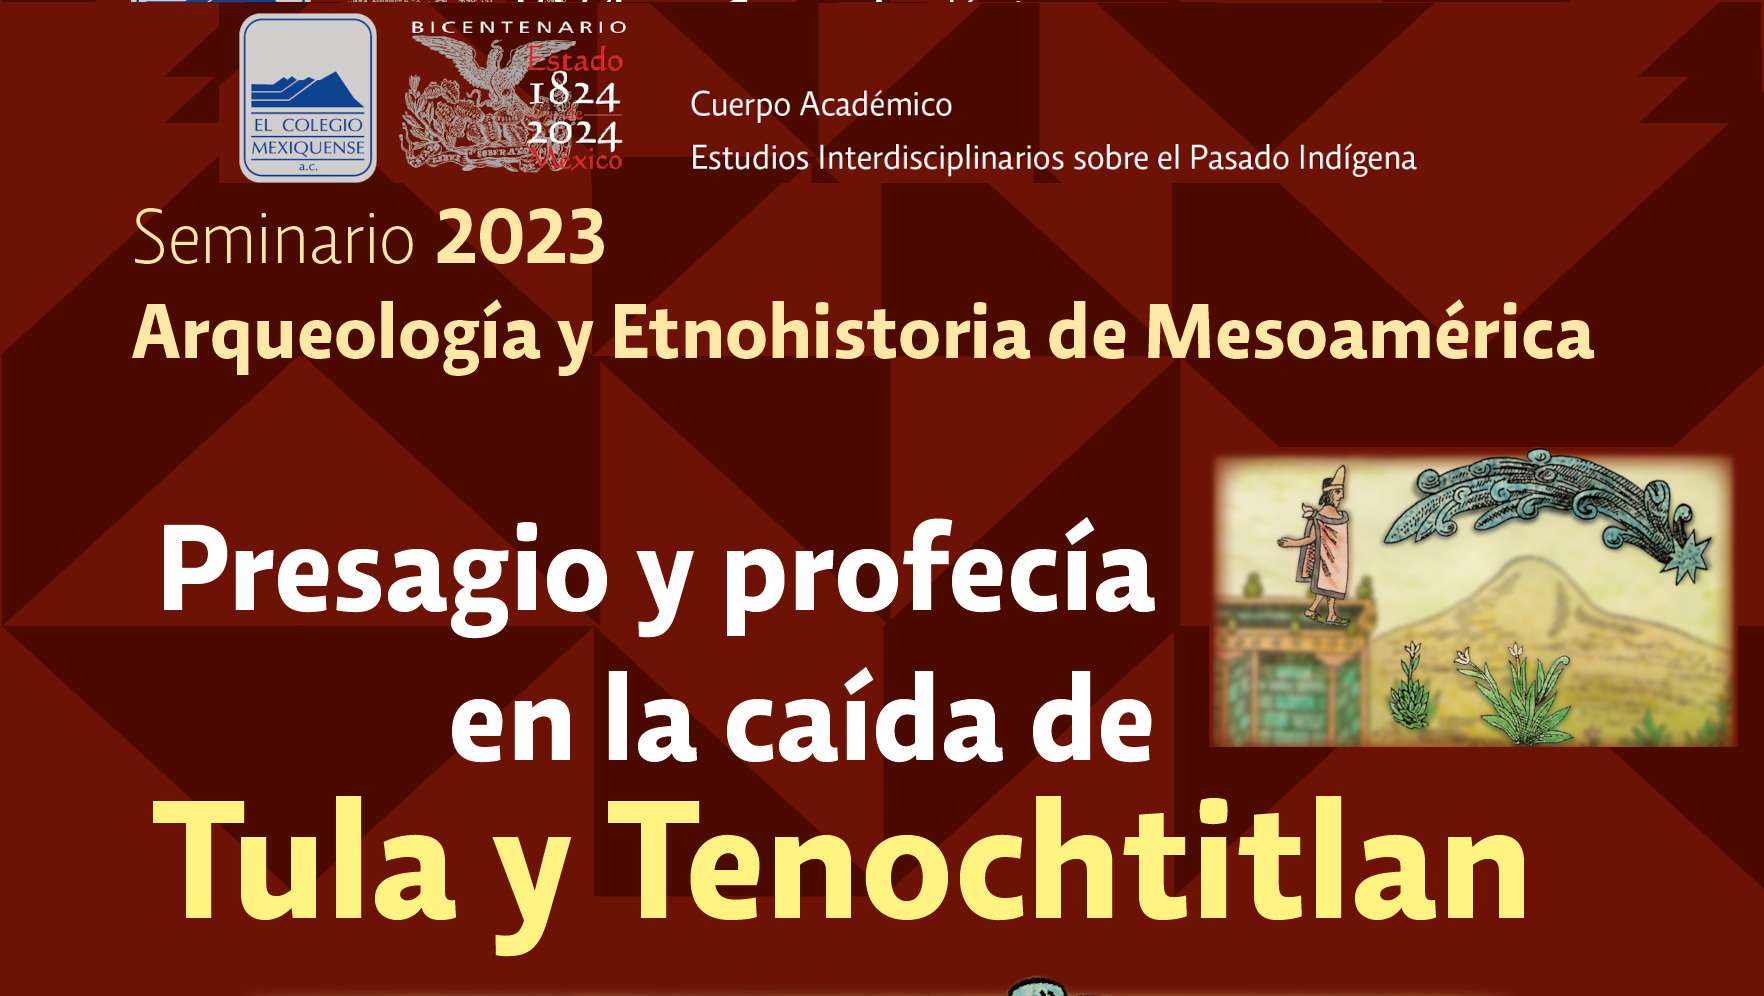 Conferencia: Presagio y profecía en la caida de Tula y Tenochtitlan